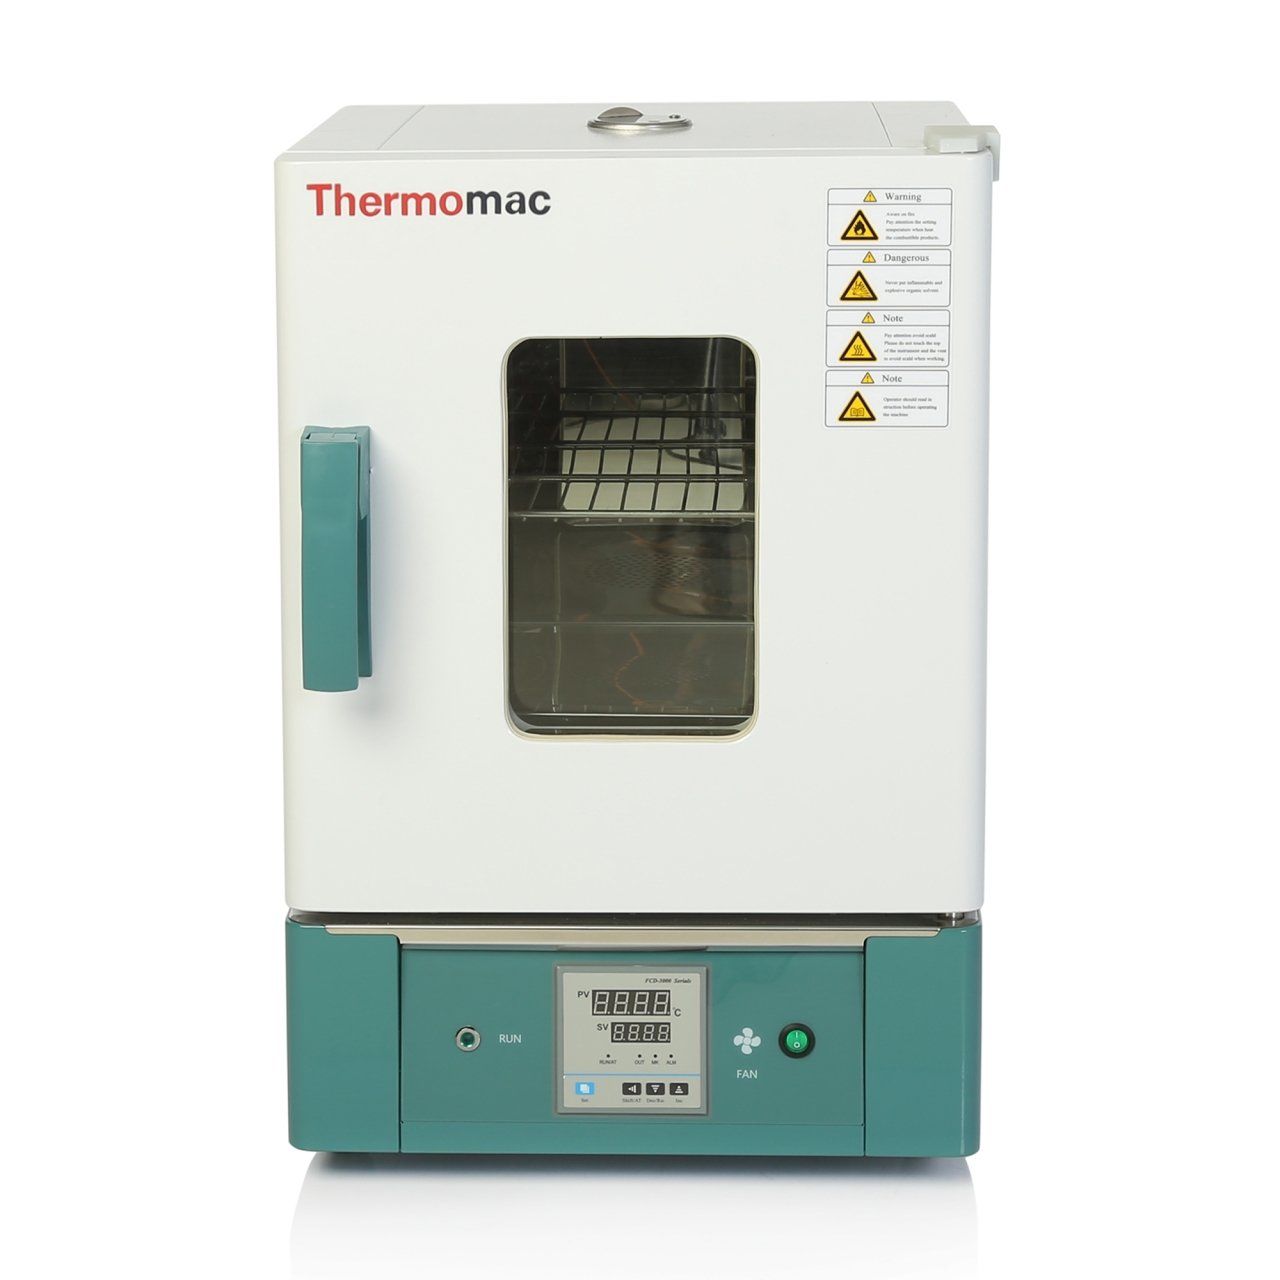 Thermomac FDO125 Laboratuvar Fırını - Fanlı Etüv 125L